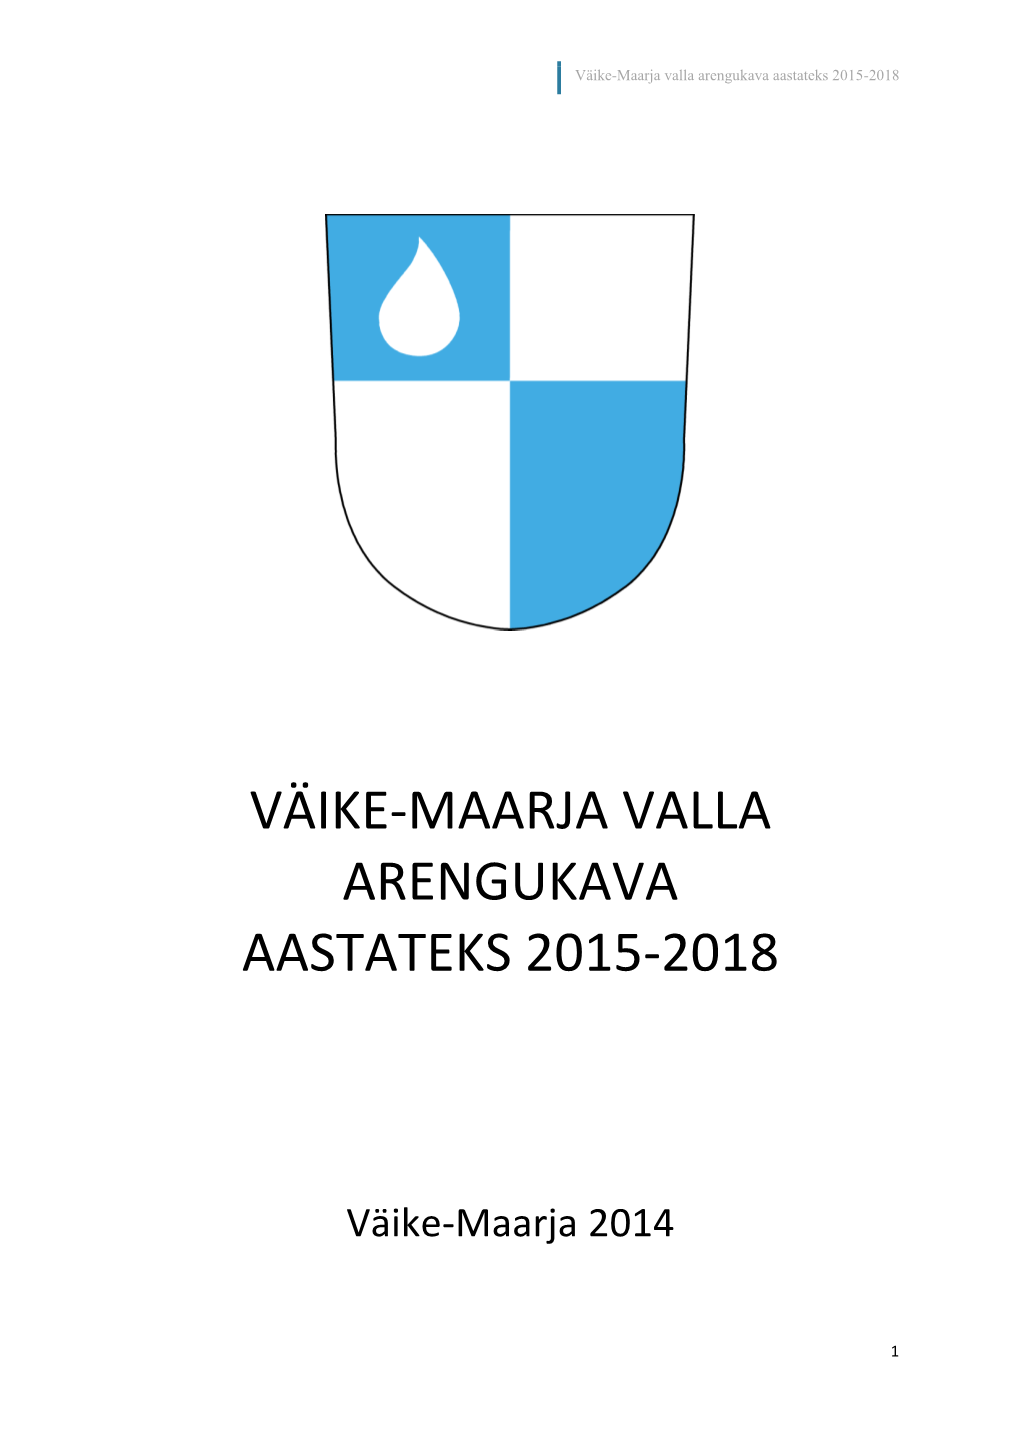 Väike-Maarja Valla Arengukava Aastateks 2015-2018